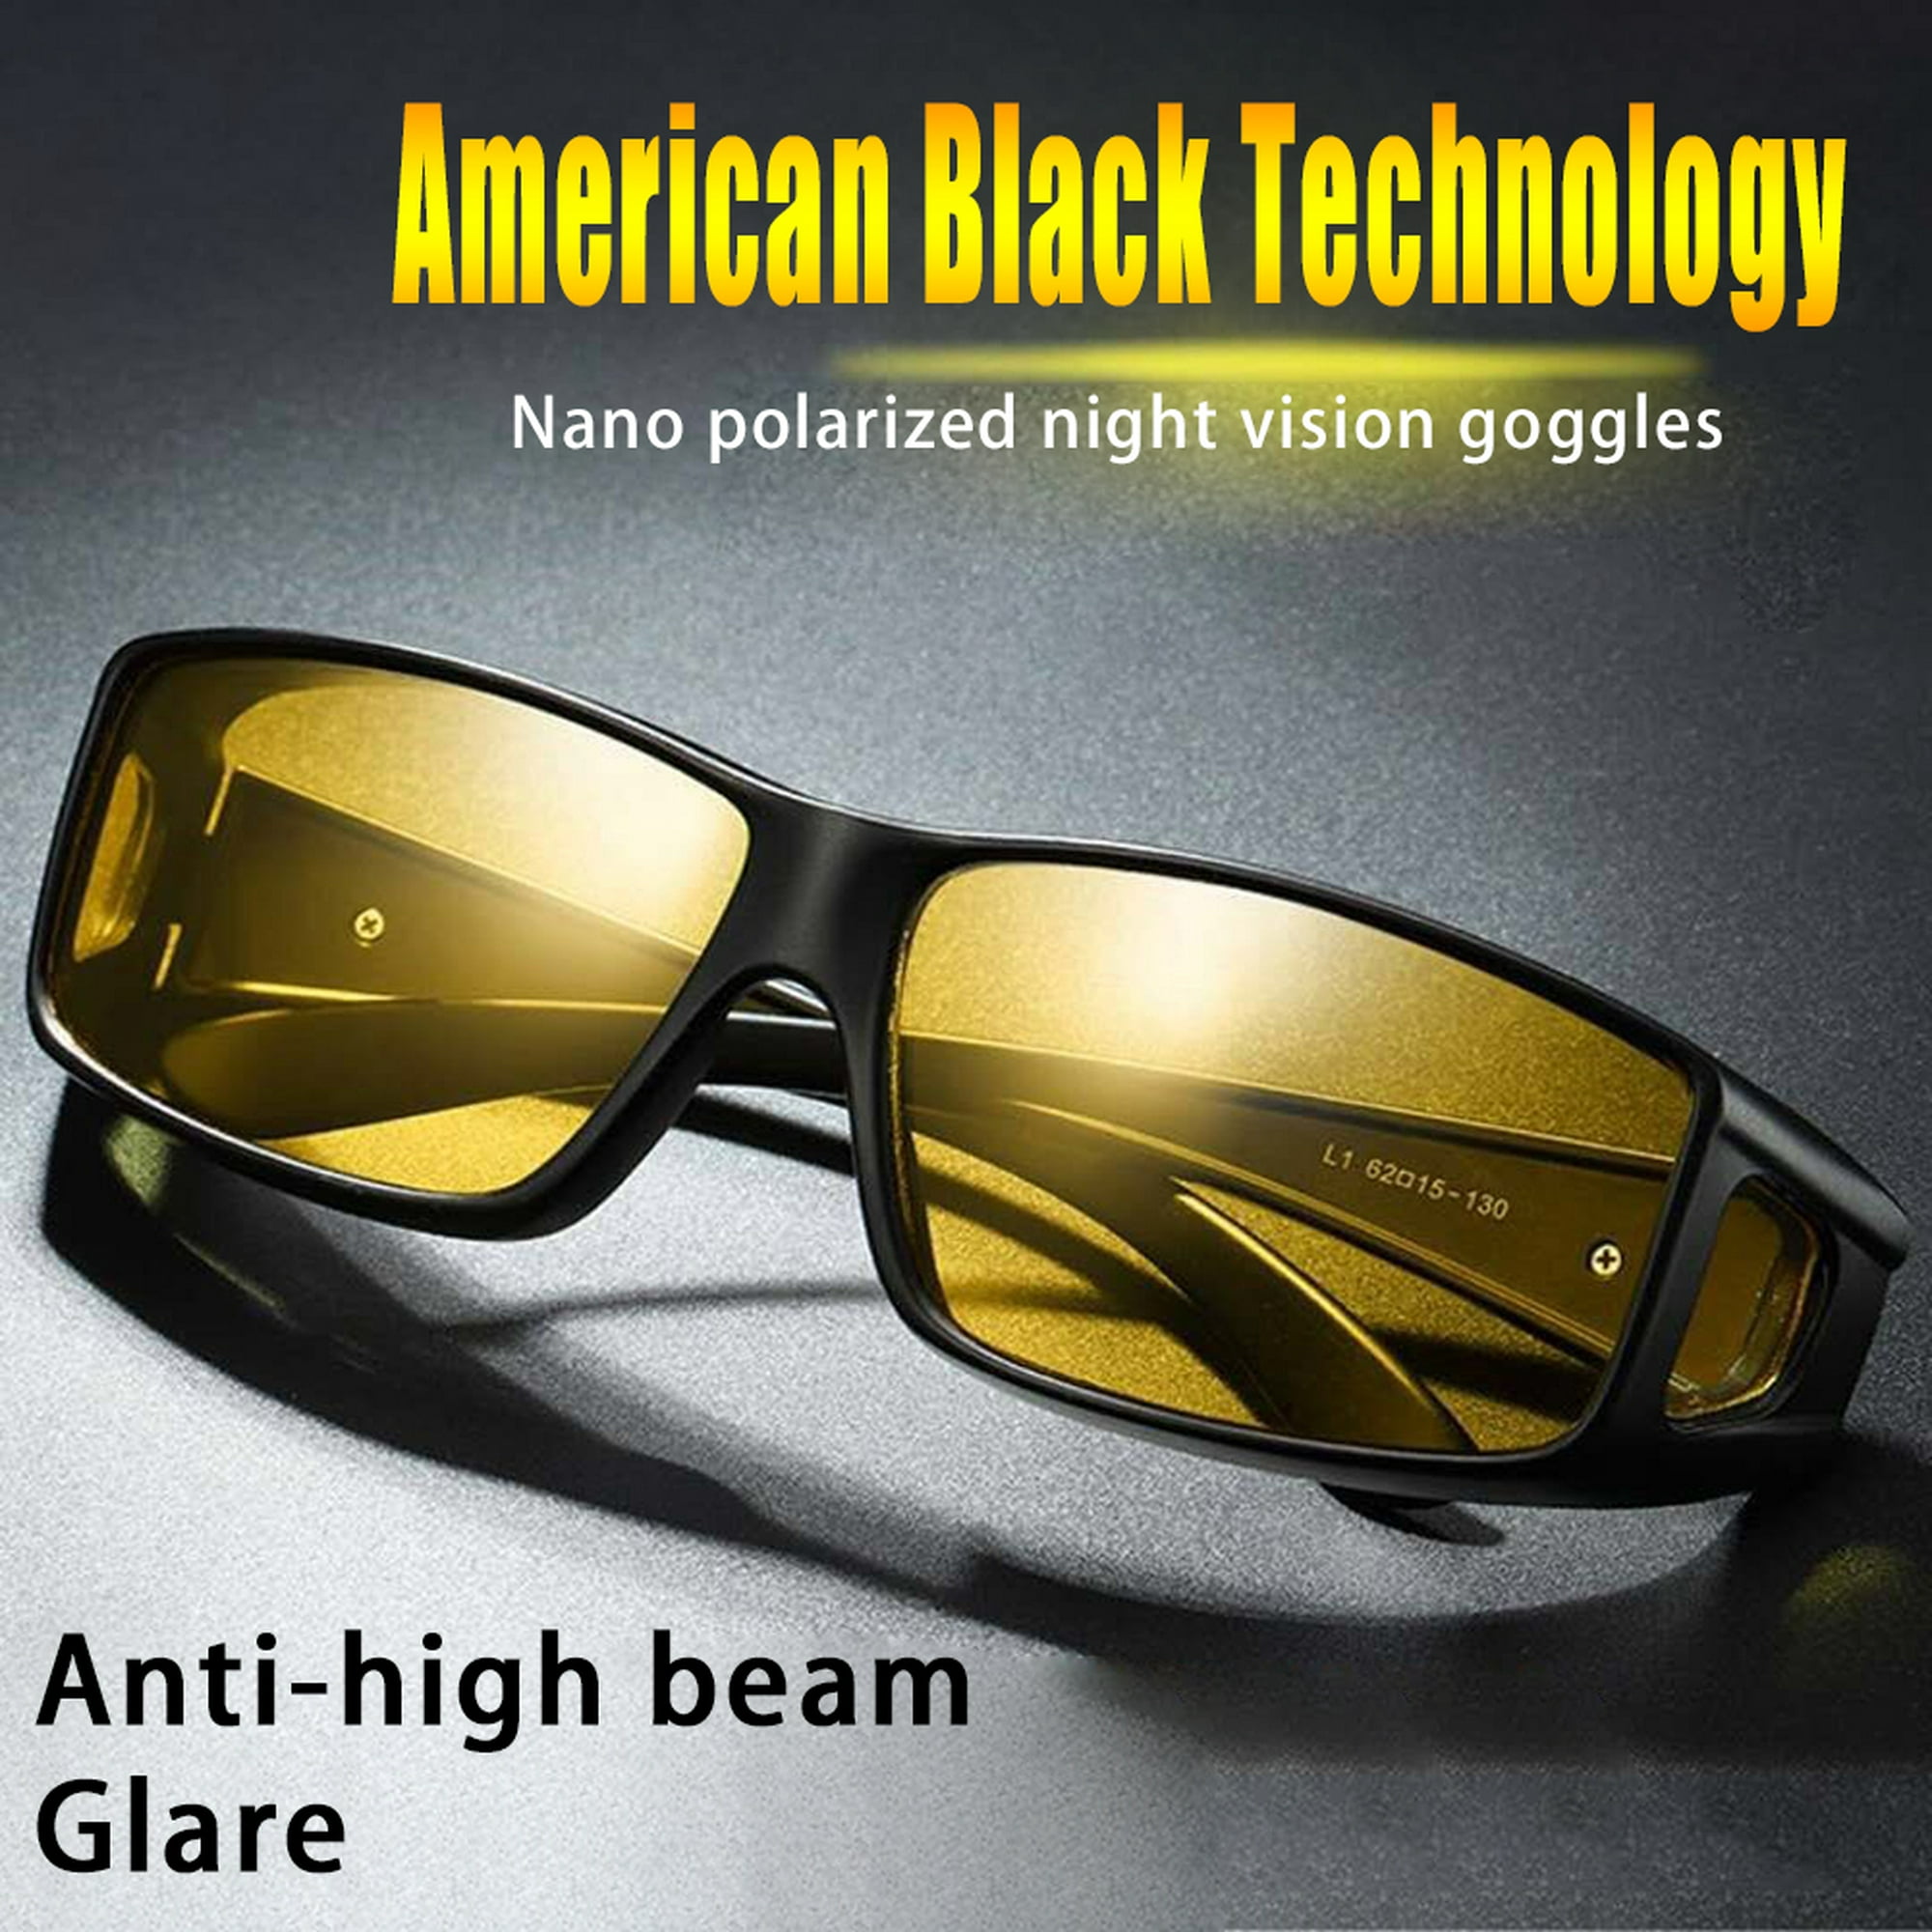 Gafas de visión nocturna para mujeres y hombres, antirreflejos, lentes  amarillas polarizadas para la noche